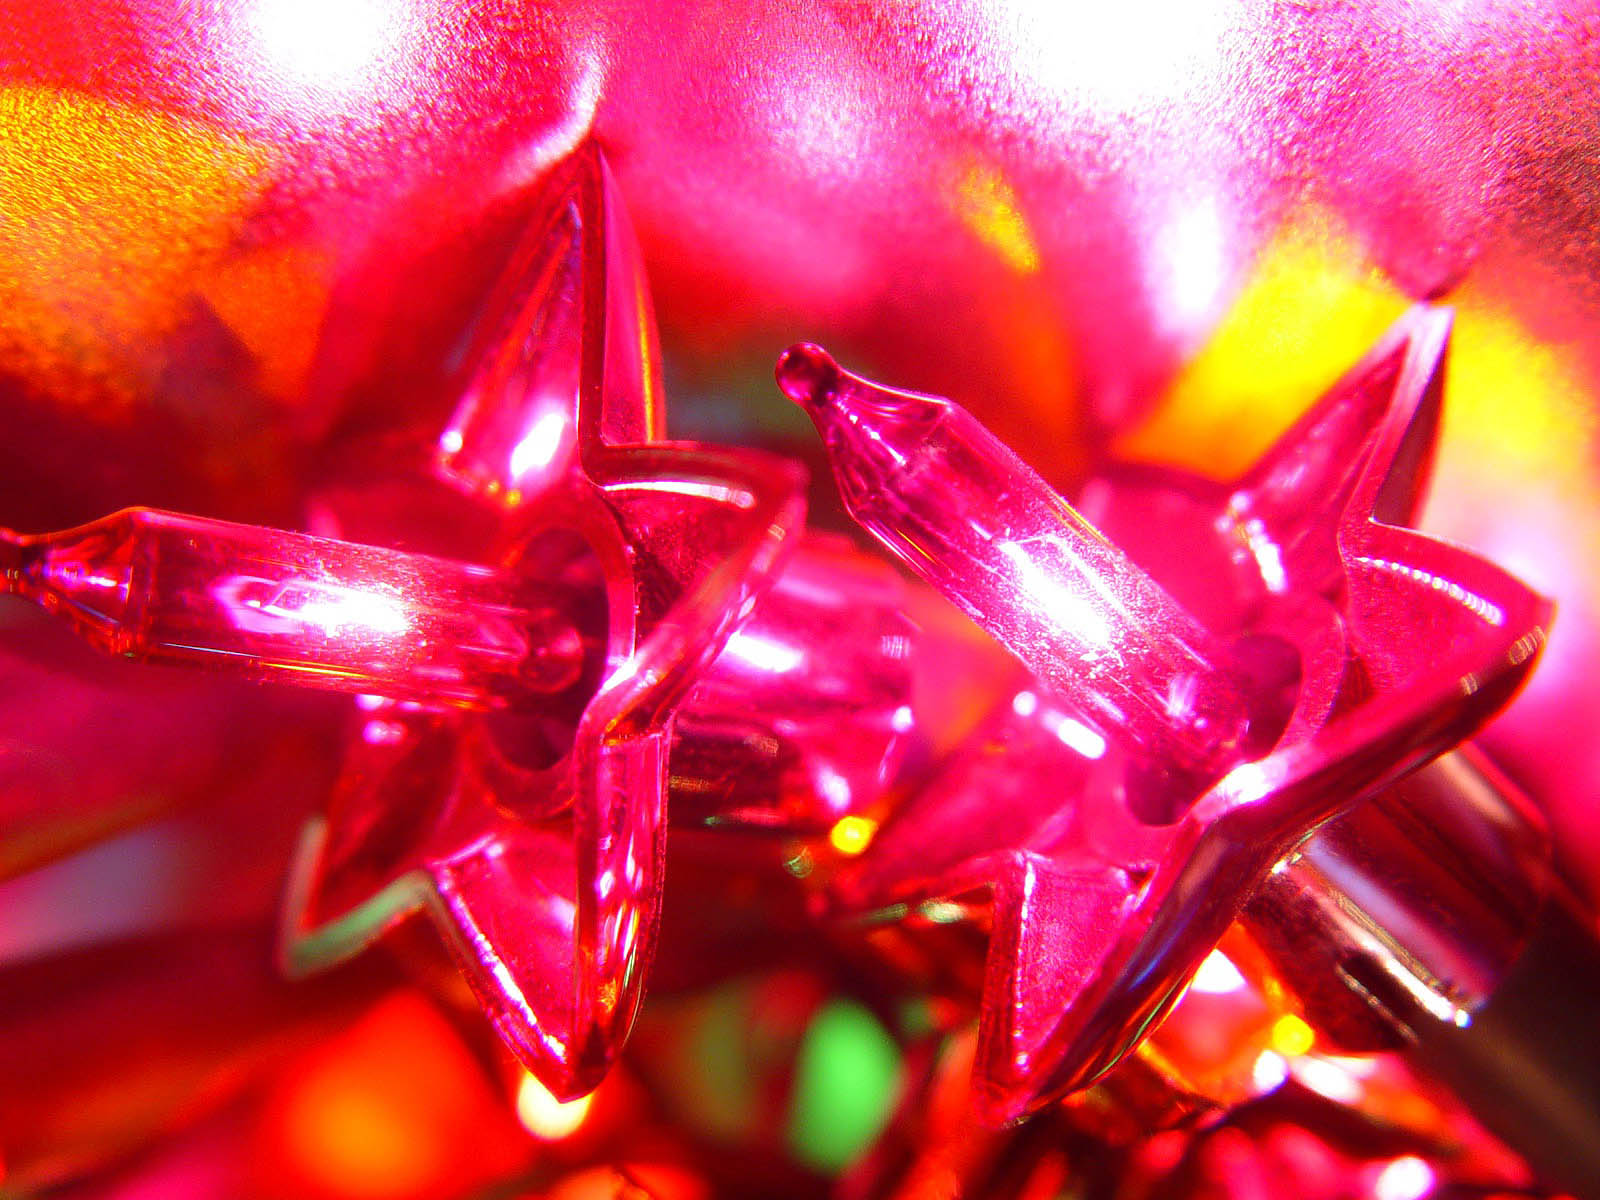 luces de navidad fondos de escritorio,rosado,rojo,ligero,púrpura,encendiendo